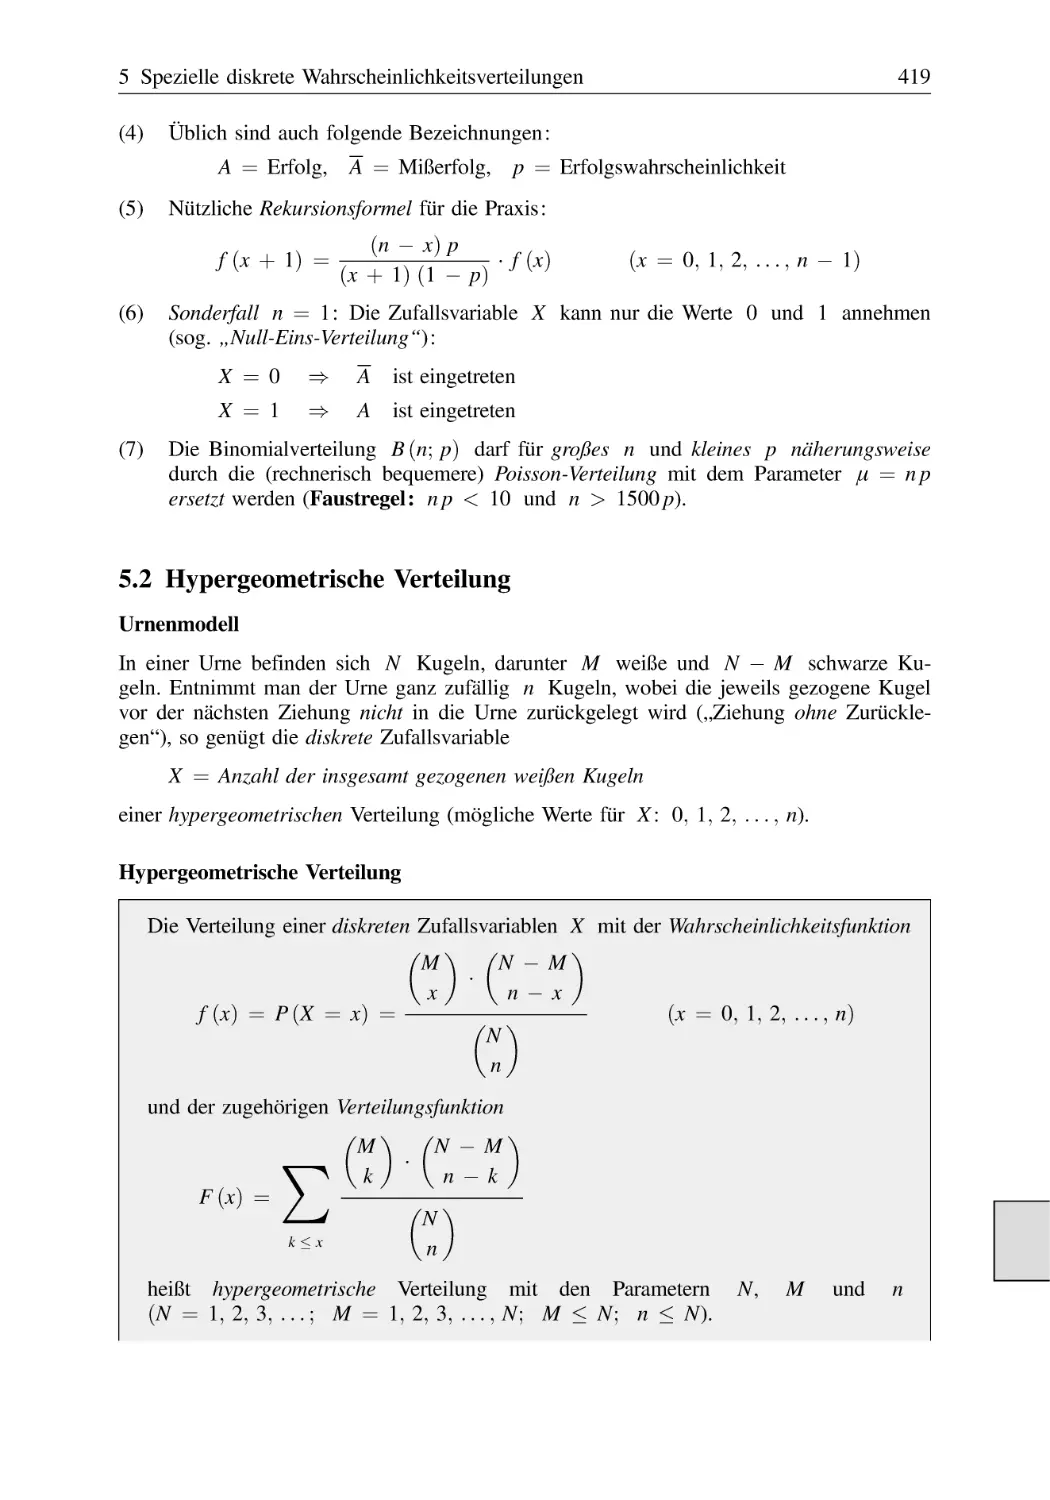 5.2 Hypergeometrische Verteilung